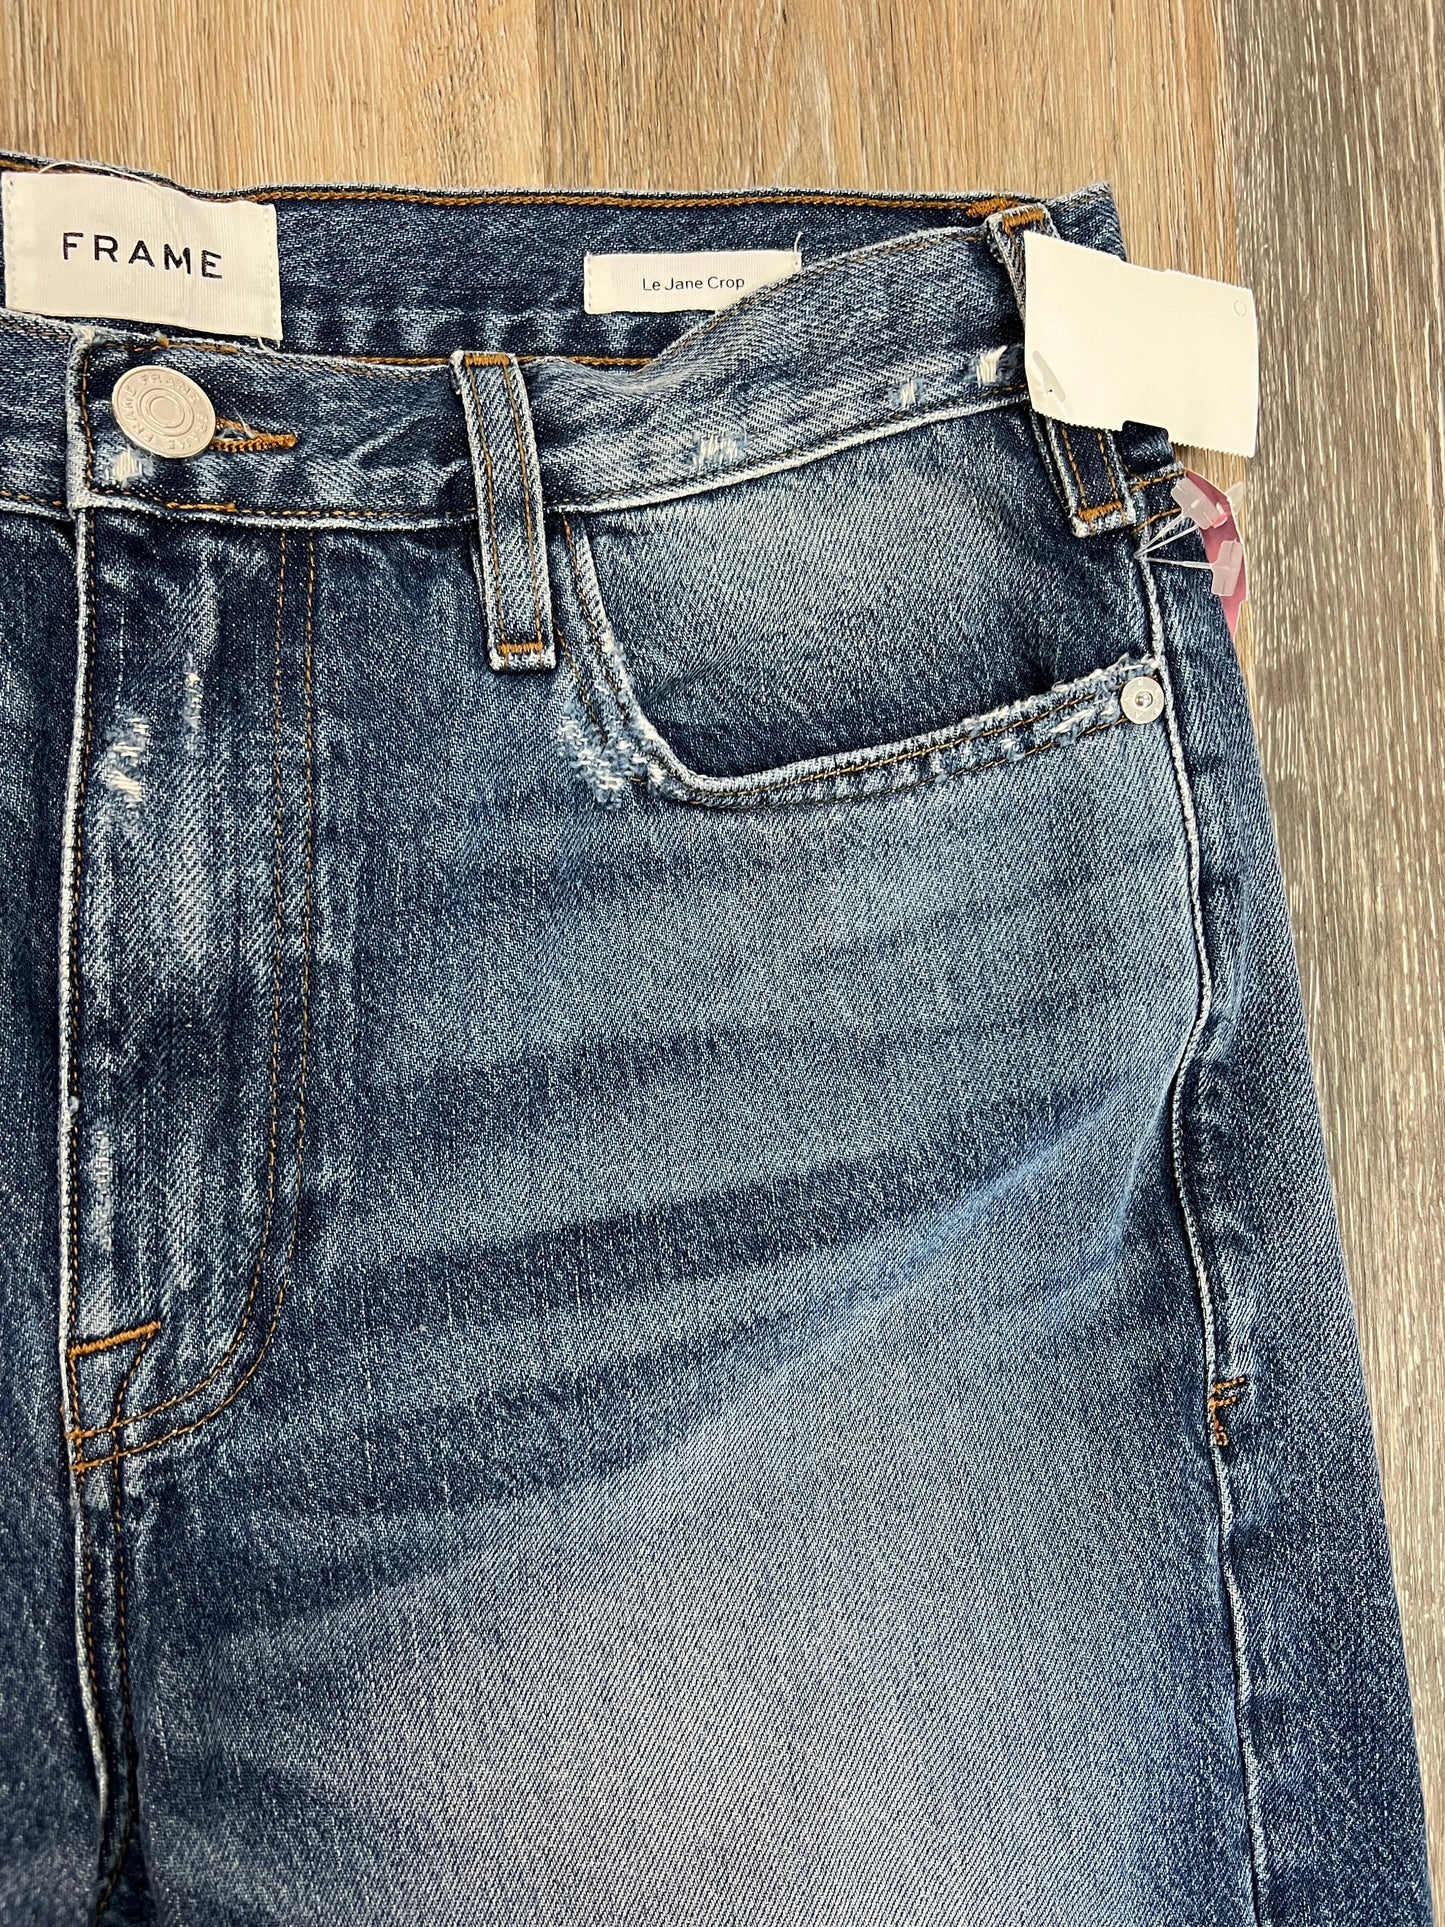 Jeans Designer By Frame  Size: 6/28